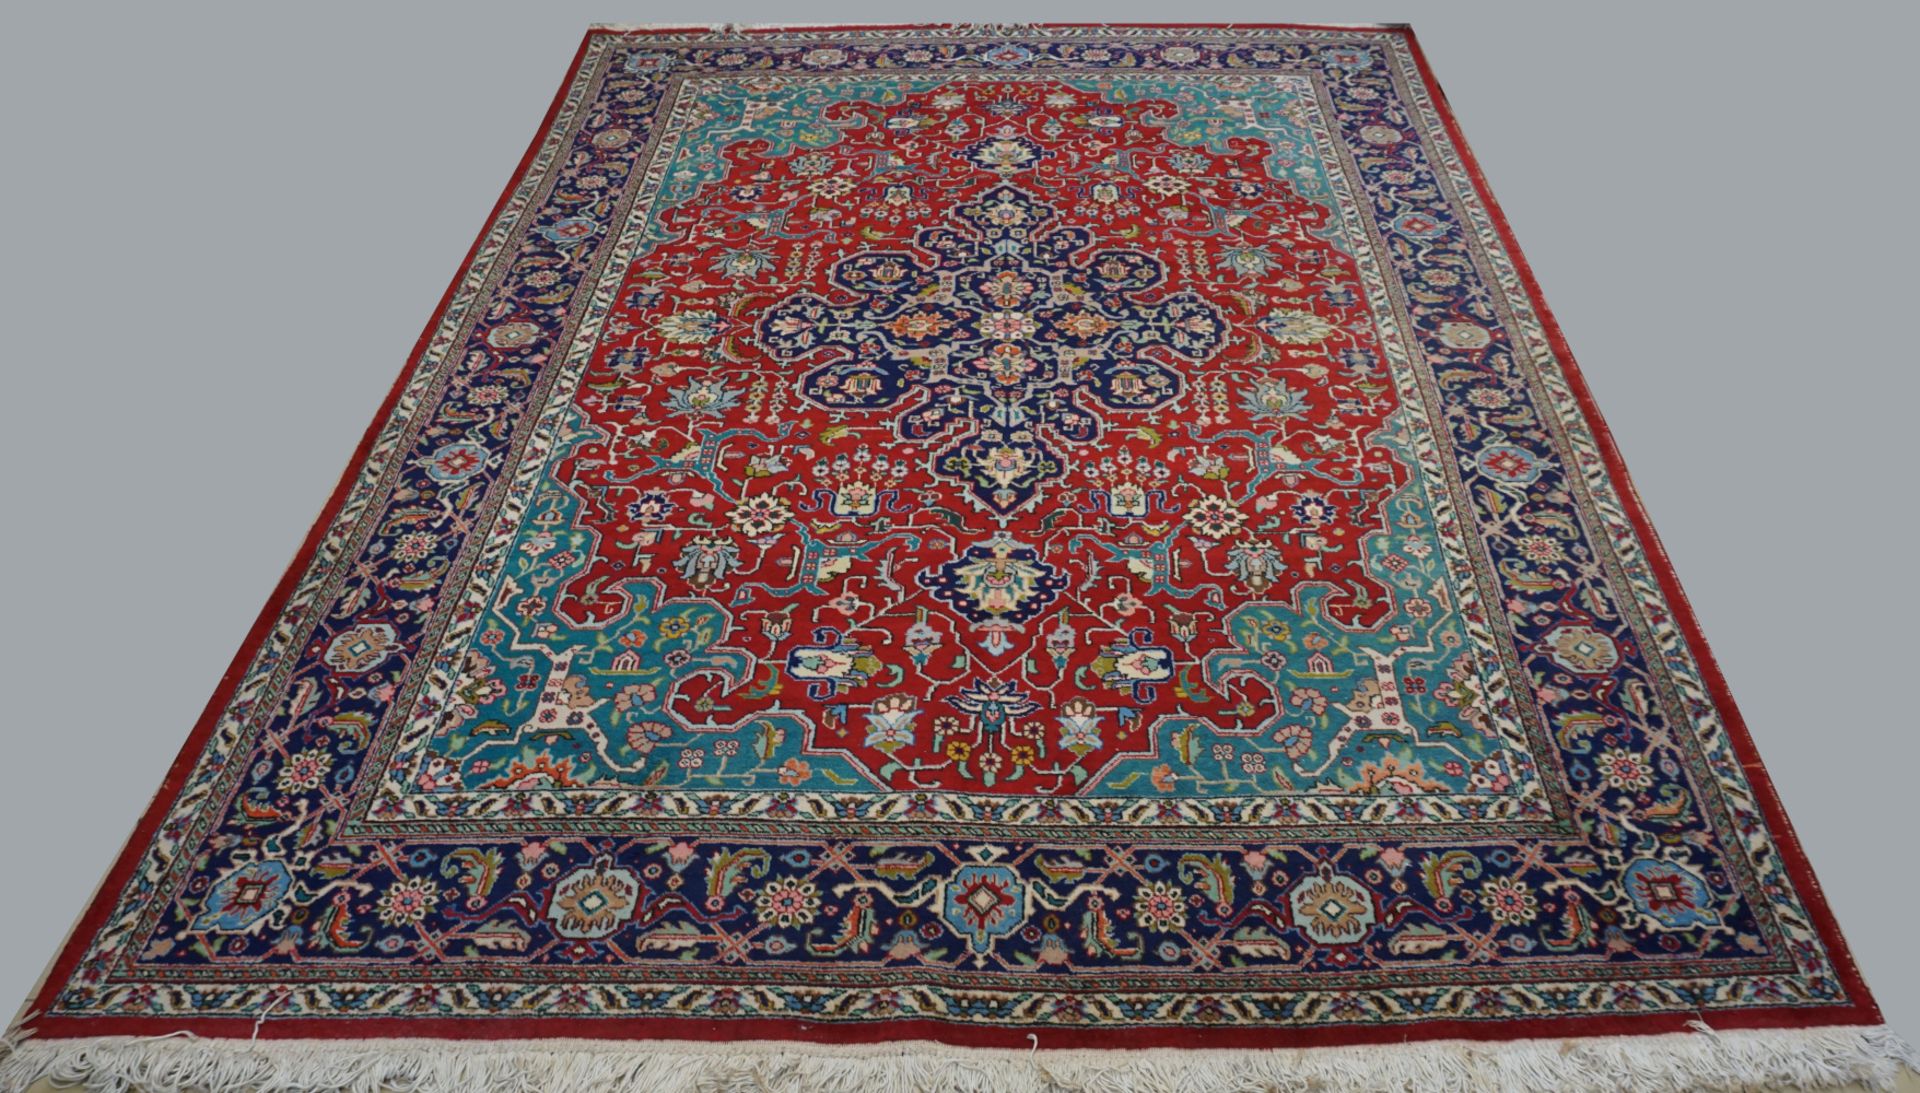 1 Orientteppich, Wolle, rot-/blaugrundig, floraler Dekor mit Mittelmedaillon, Mehrfachbordüre, ca. 3